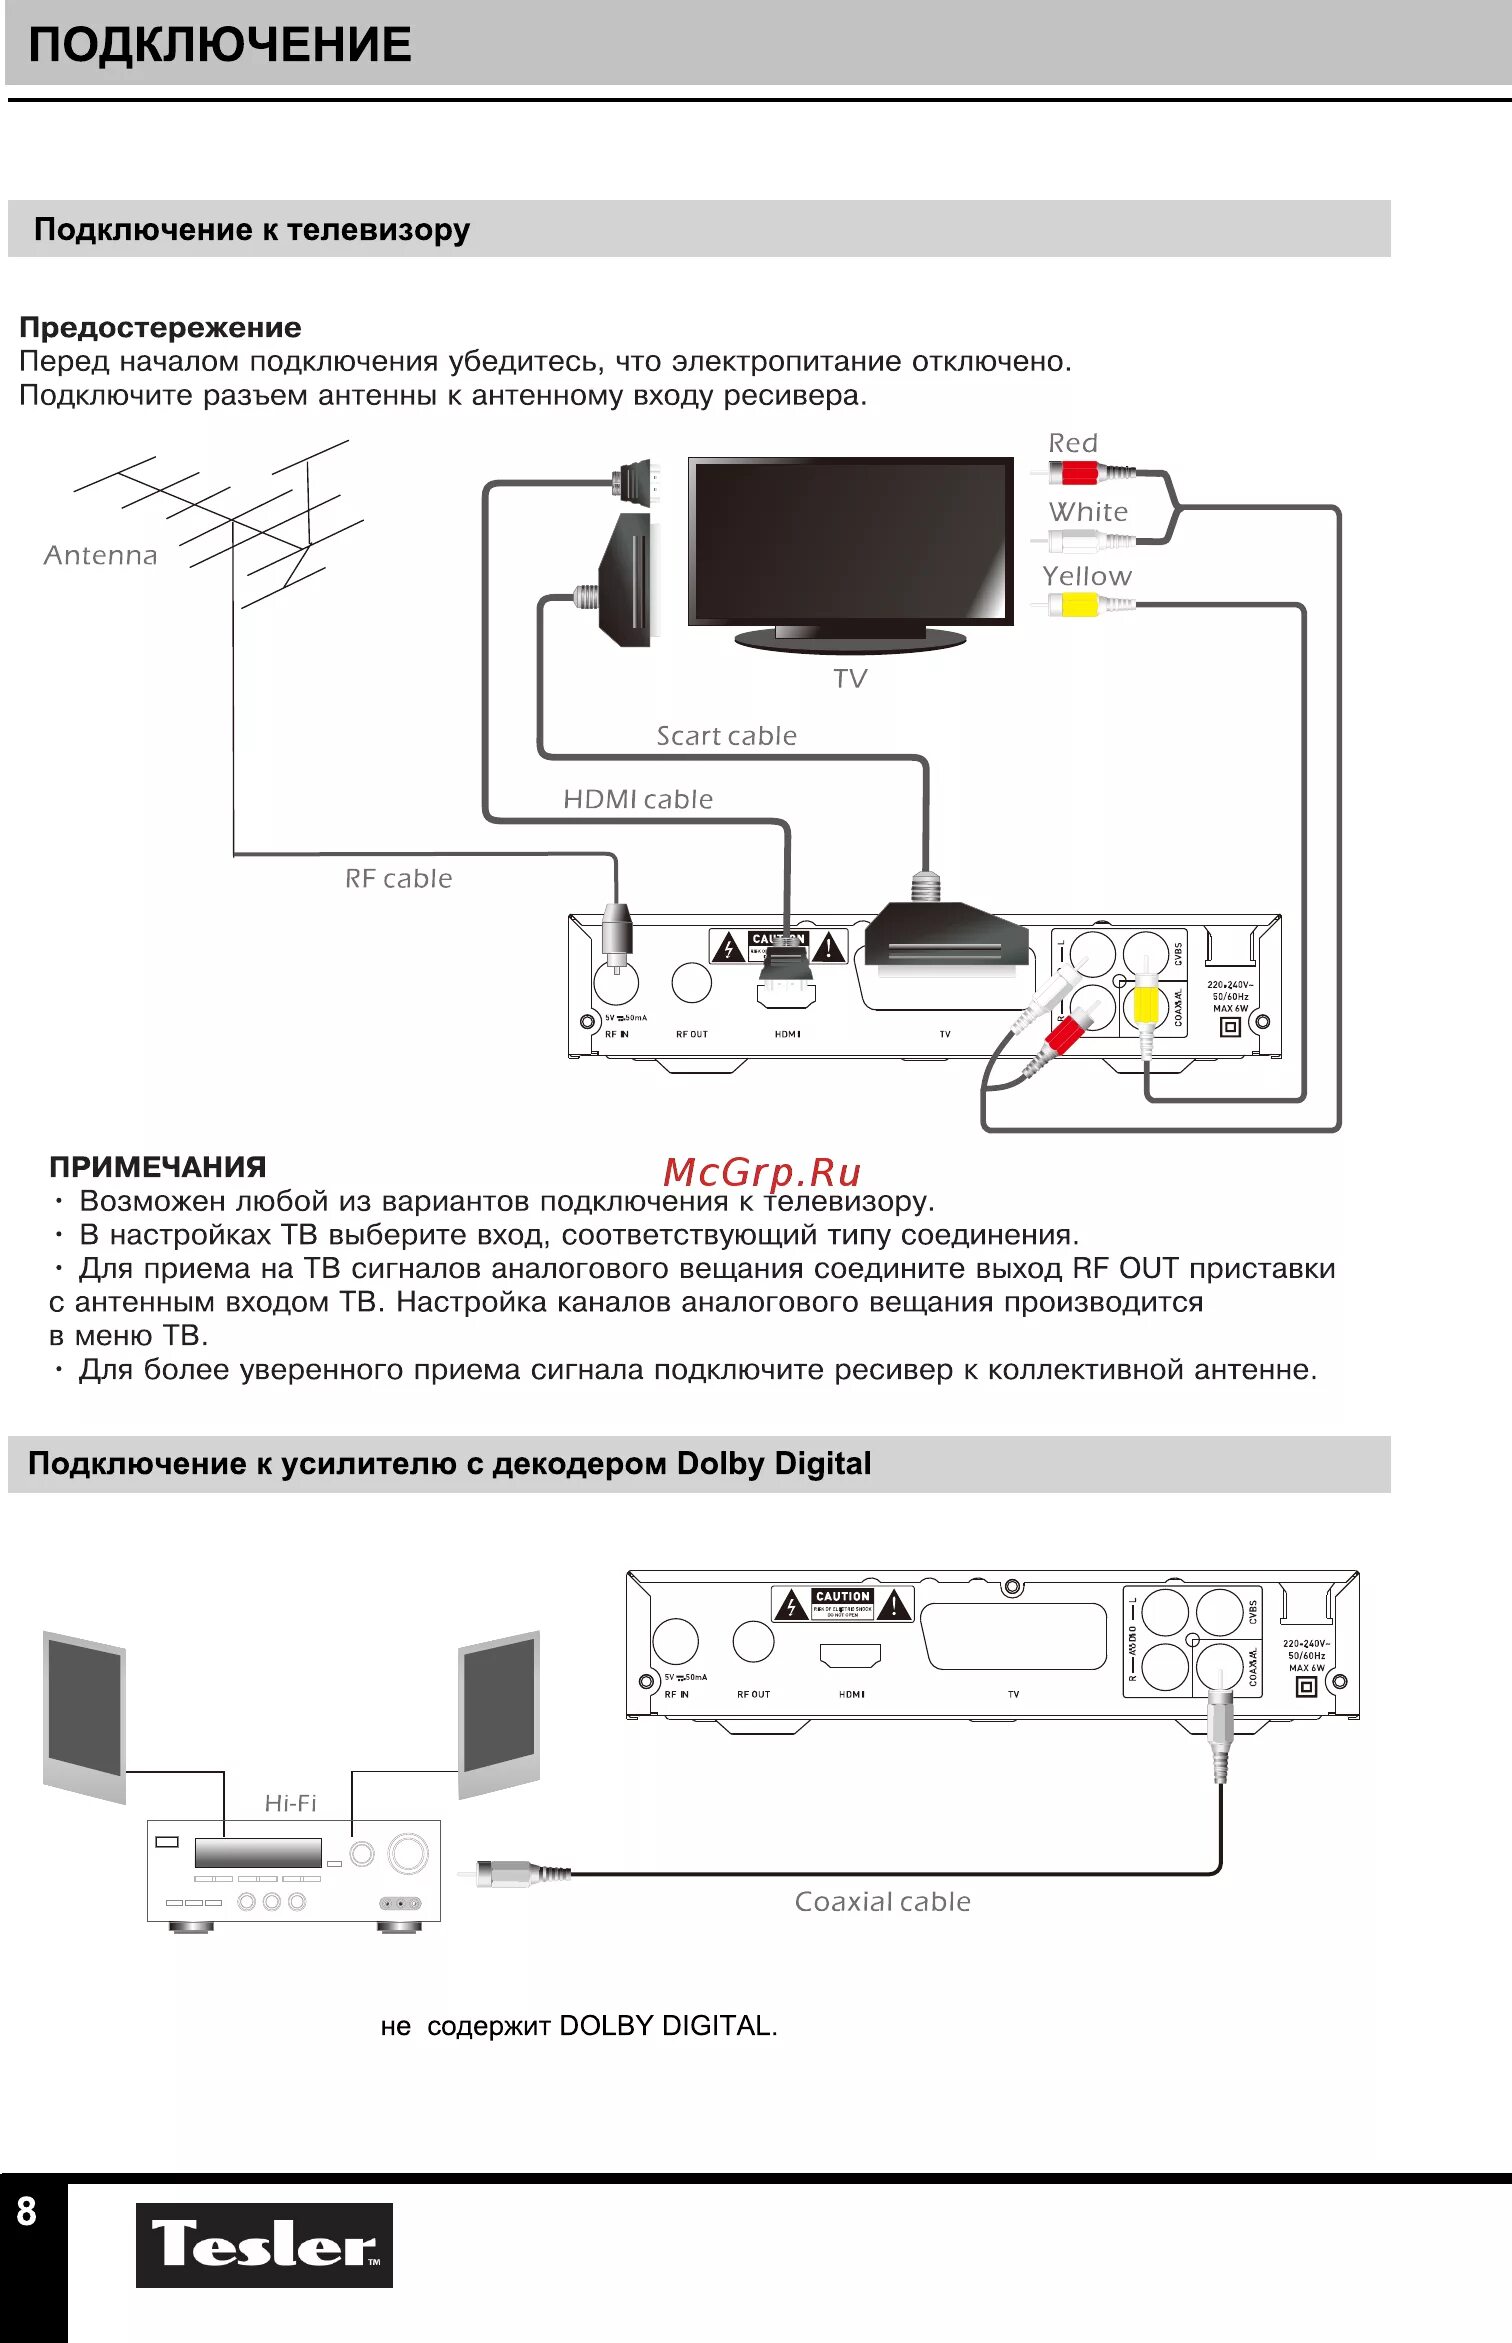 Схема подключения антенны к телевизору со встроенным тюнером т 2. Схема подключения антенны к телевизору цифровой ТВ. Приставка для цифрового телевидения МТС инструкция подключения. Схема подключения телевизора к цифровому тюнеру.